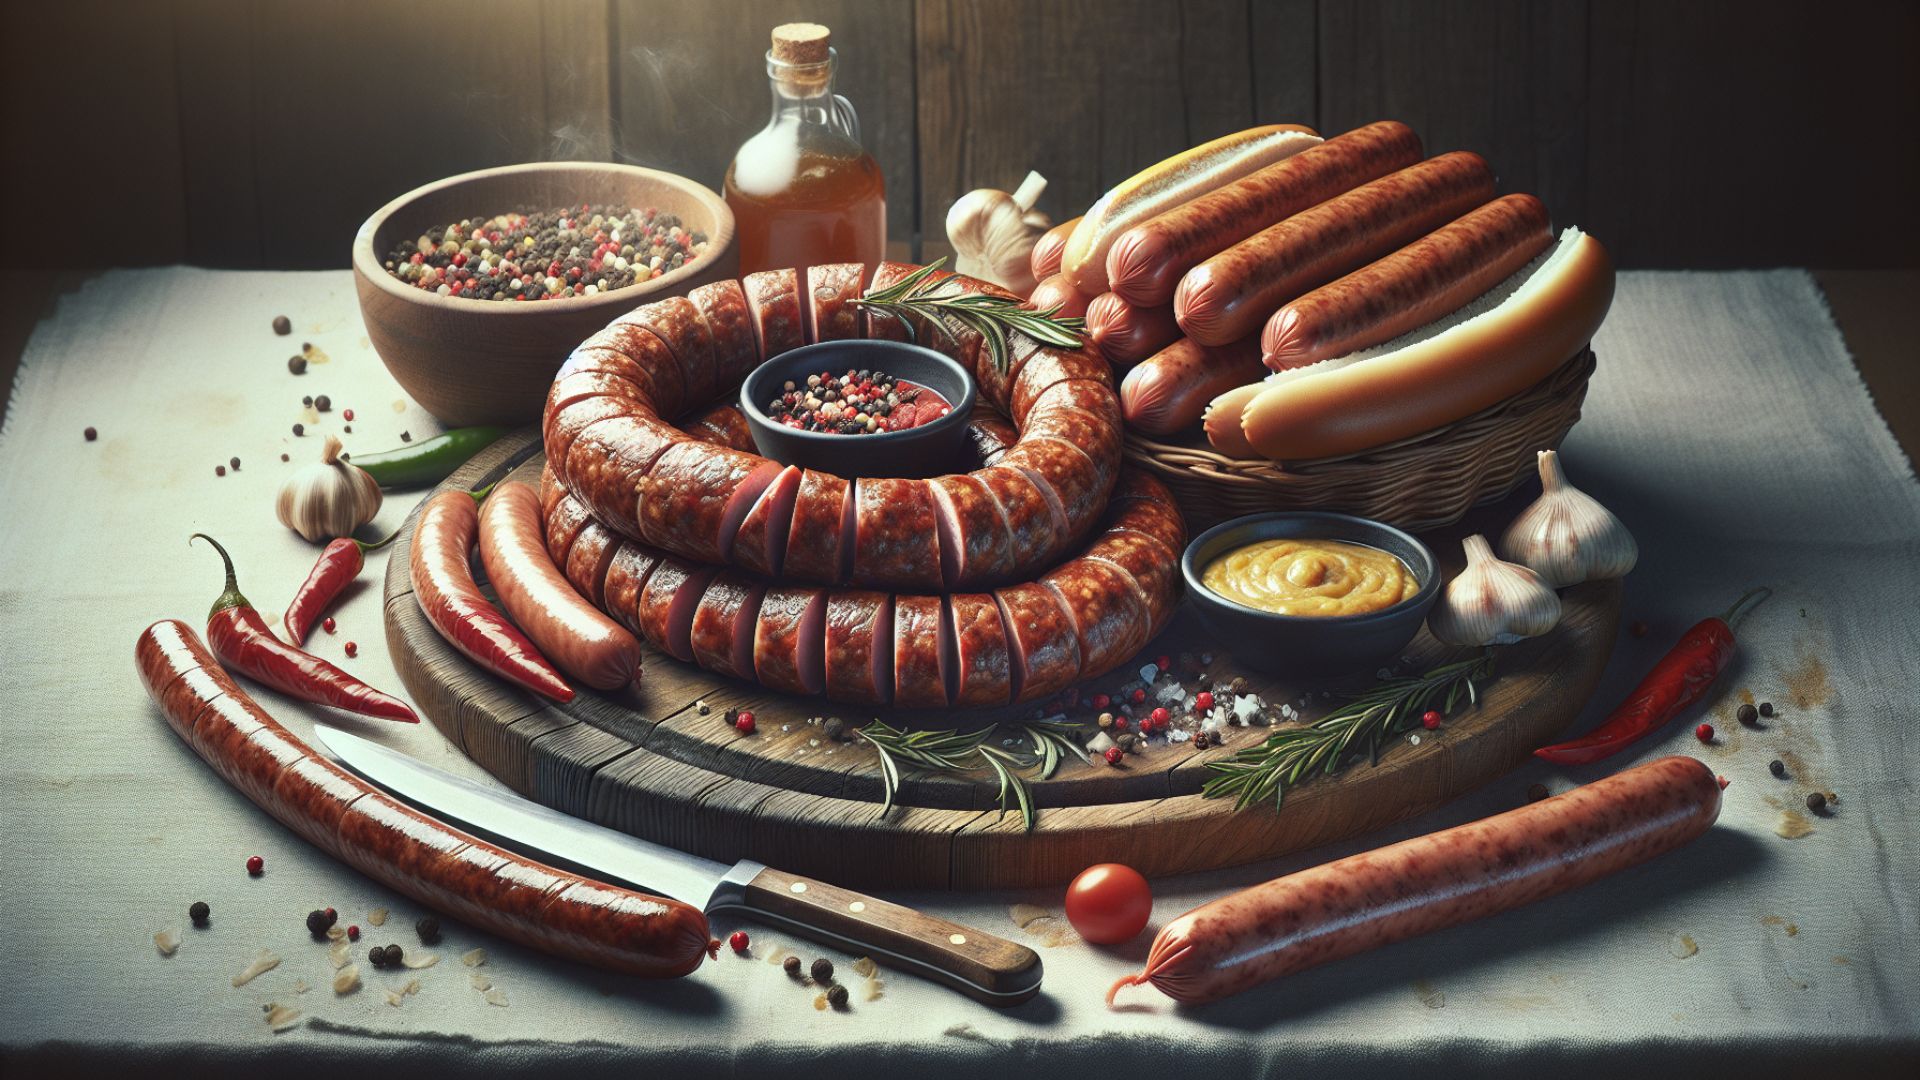 Polish Sausage vs Hotdog